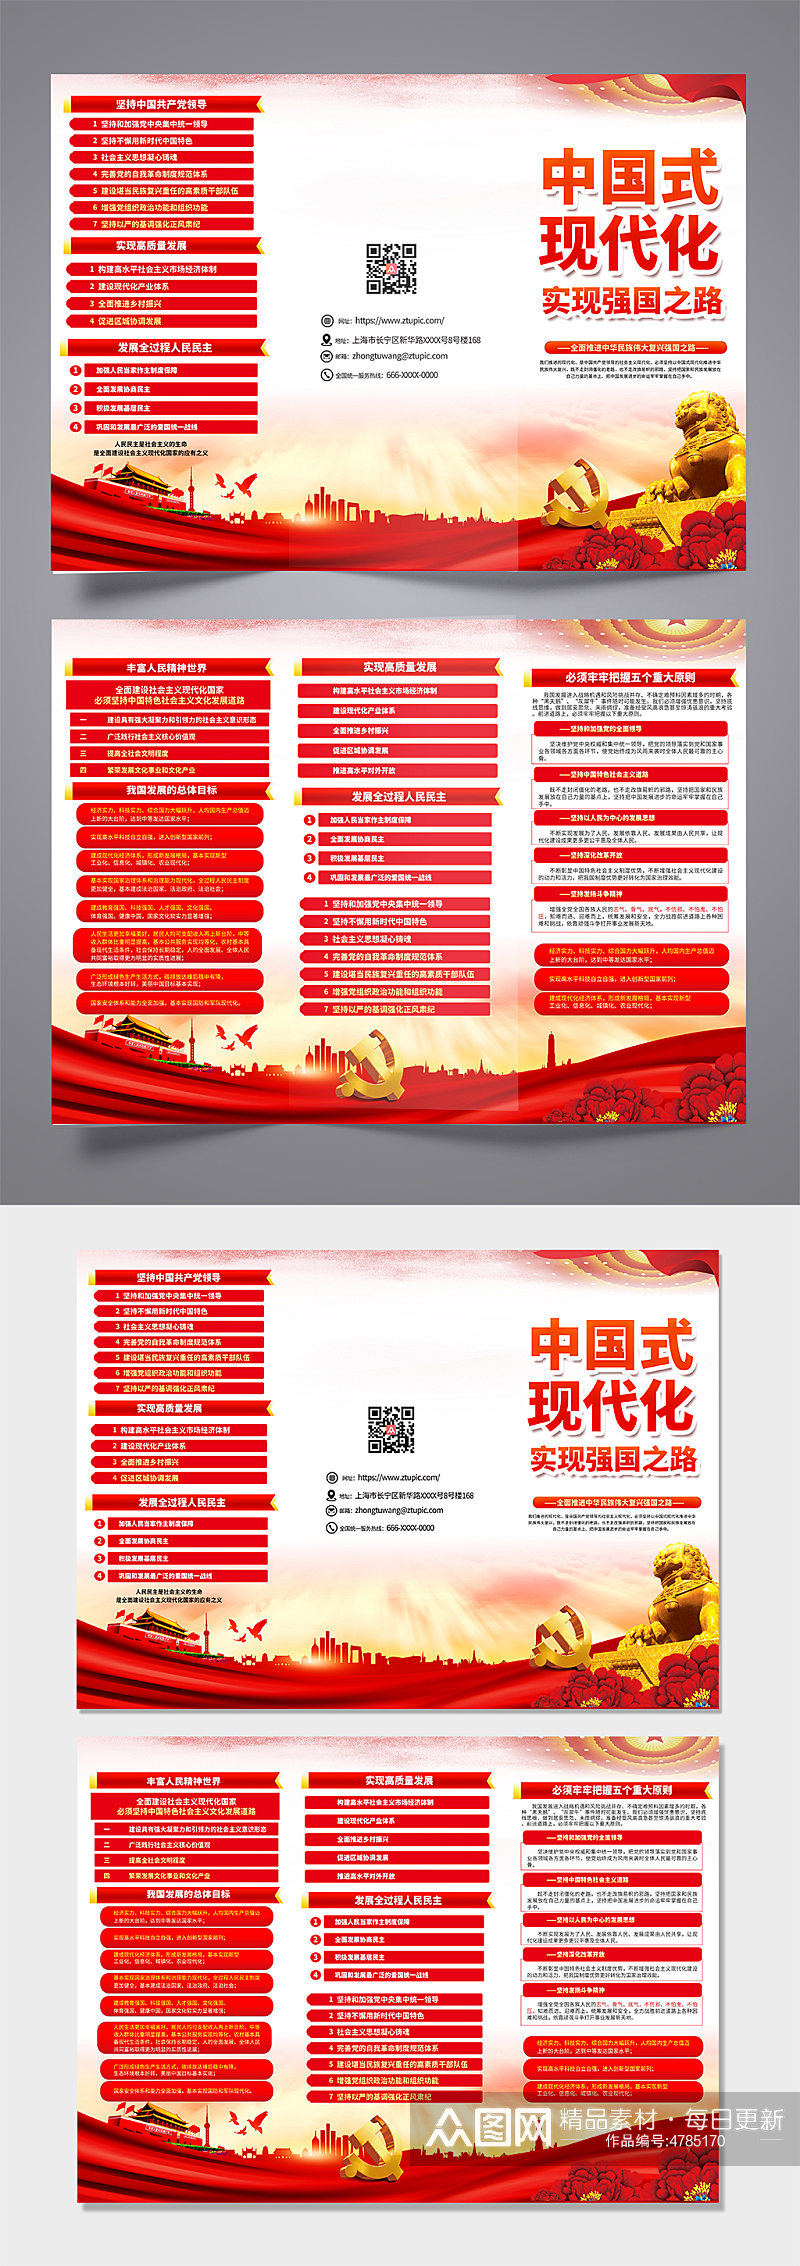 红色中国式现代化之路党建三折页设计素材